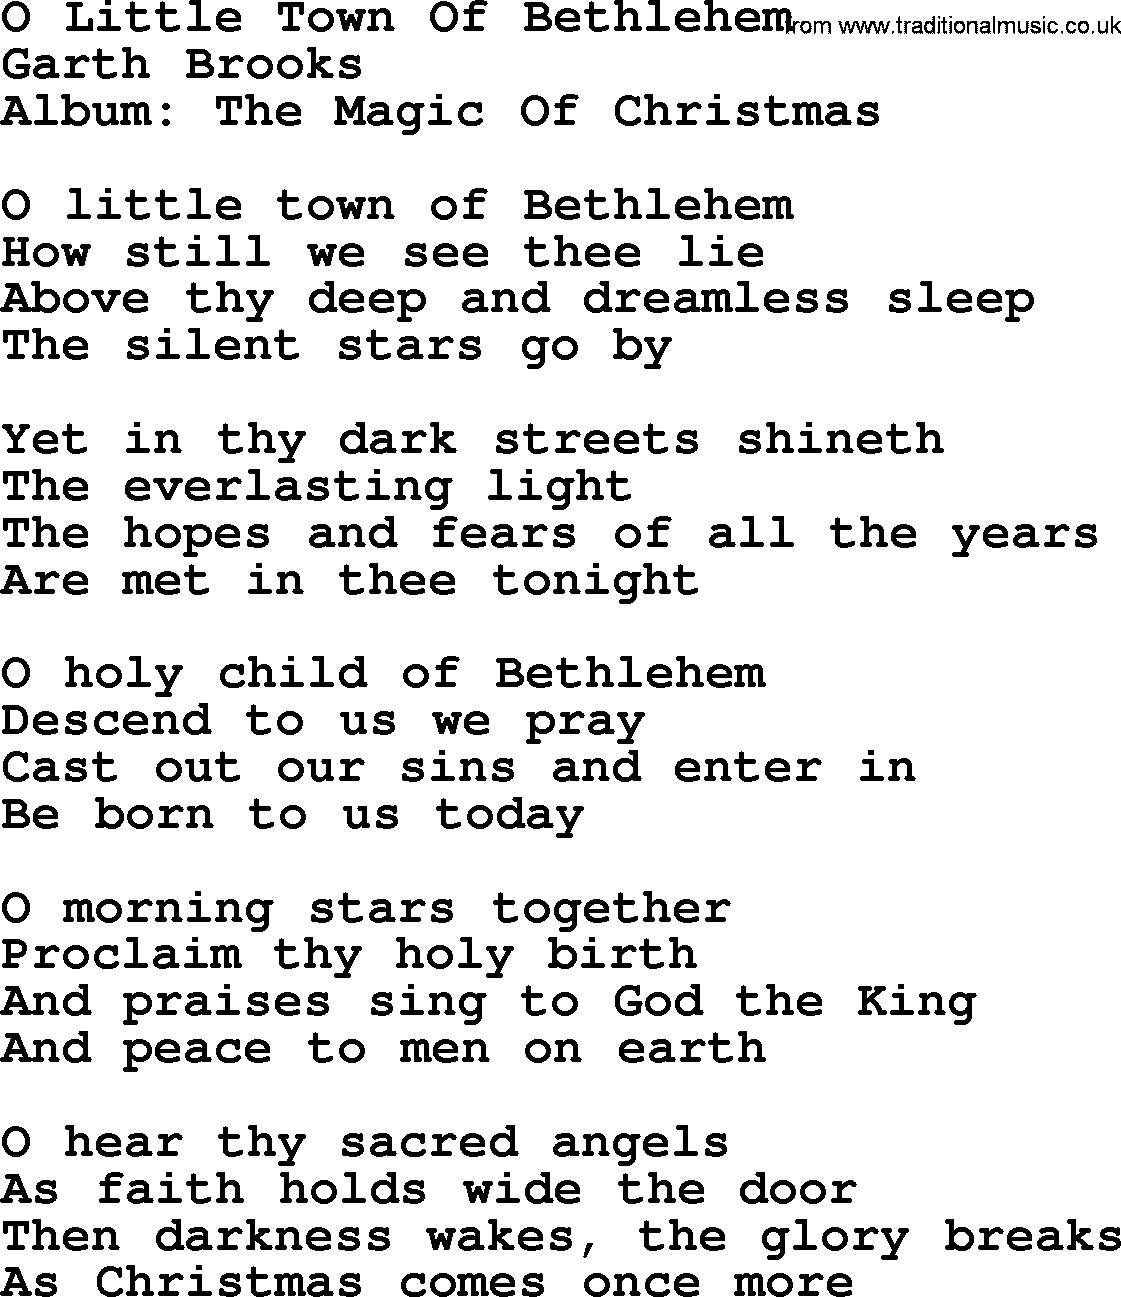 Garth Brooks song: O Little Town Of Bethlehem, lyrics